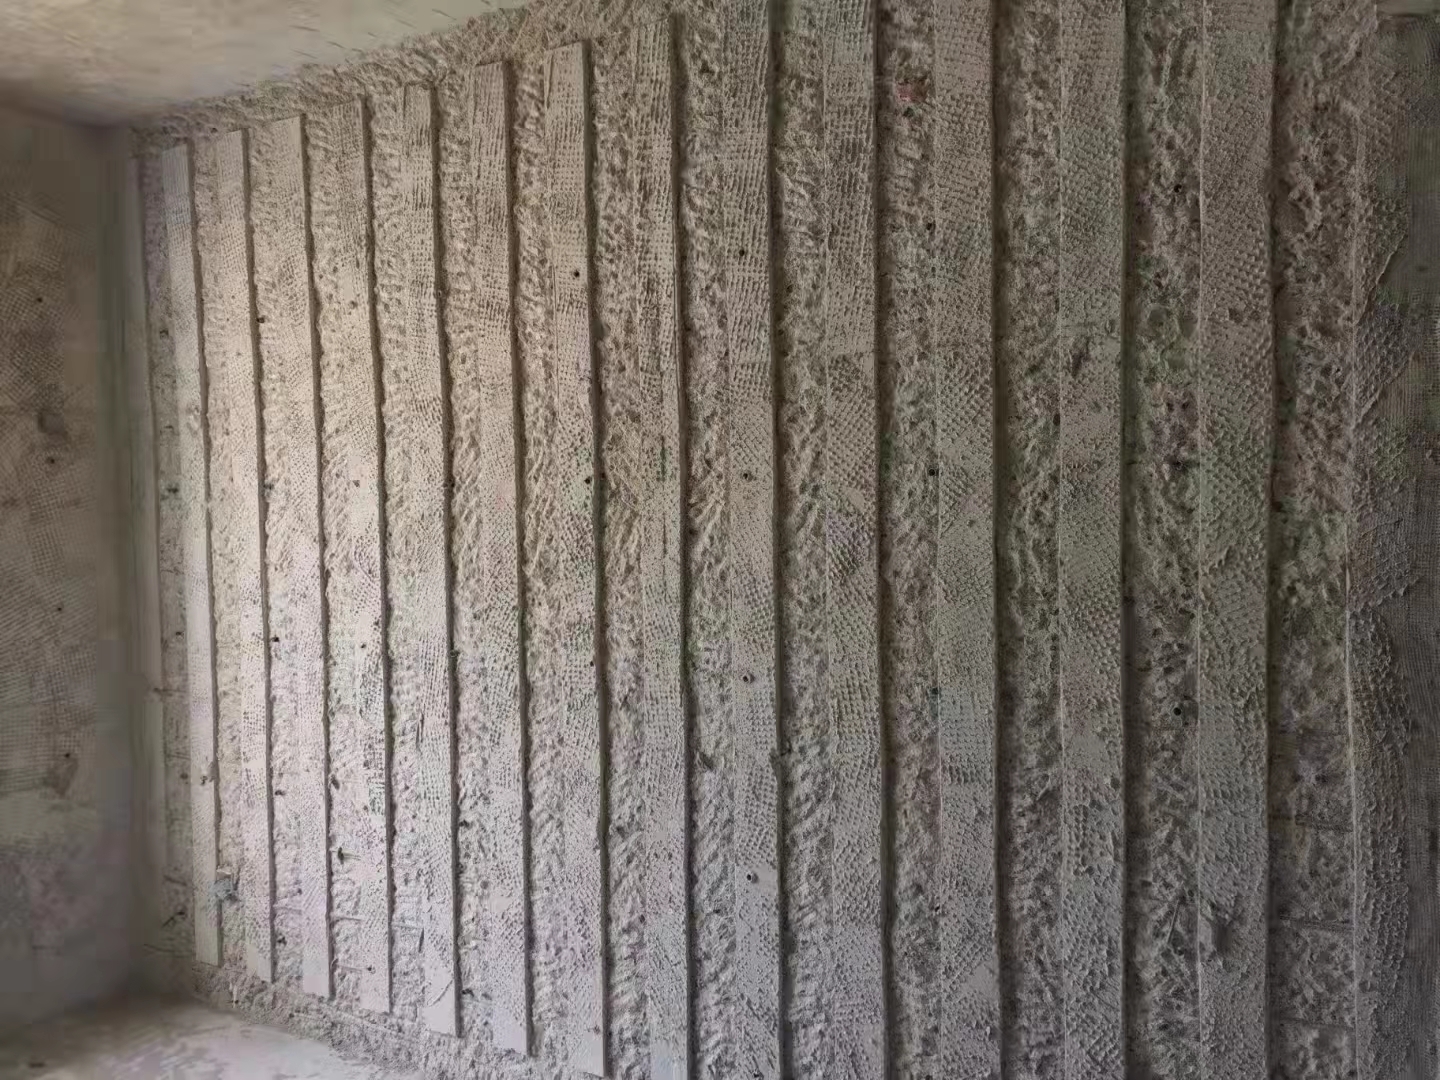 乌鲁木齐房屋墙体加固施工方法